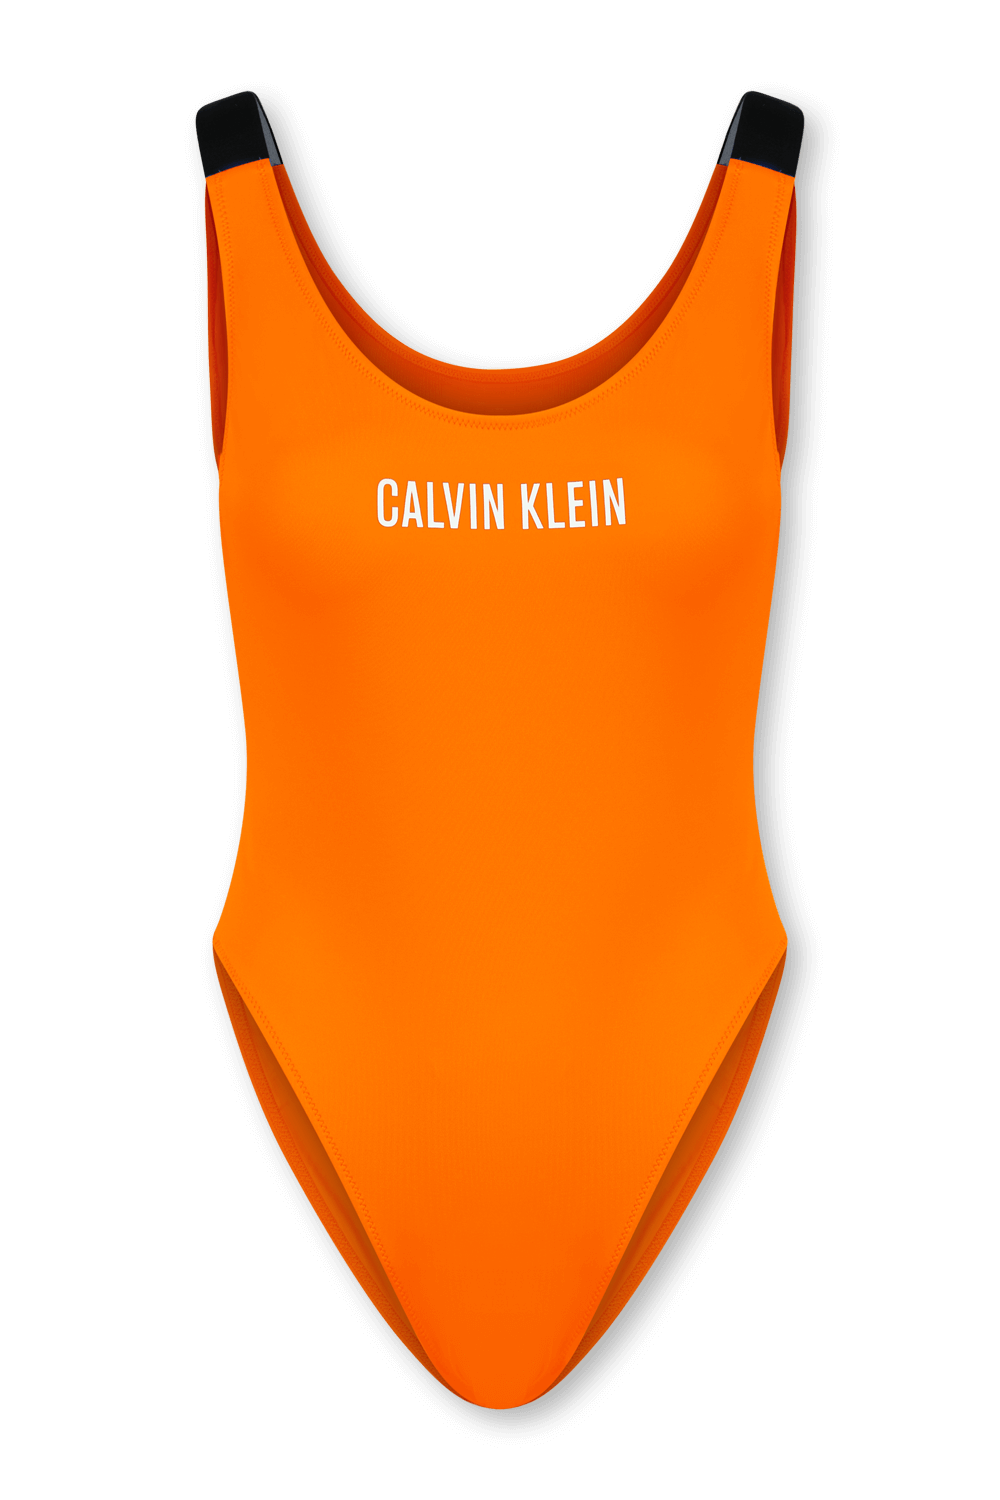 בגד ים שלם כתום עם שם המותג CALVIN KLEIN